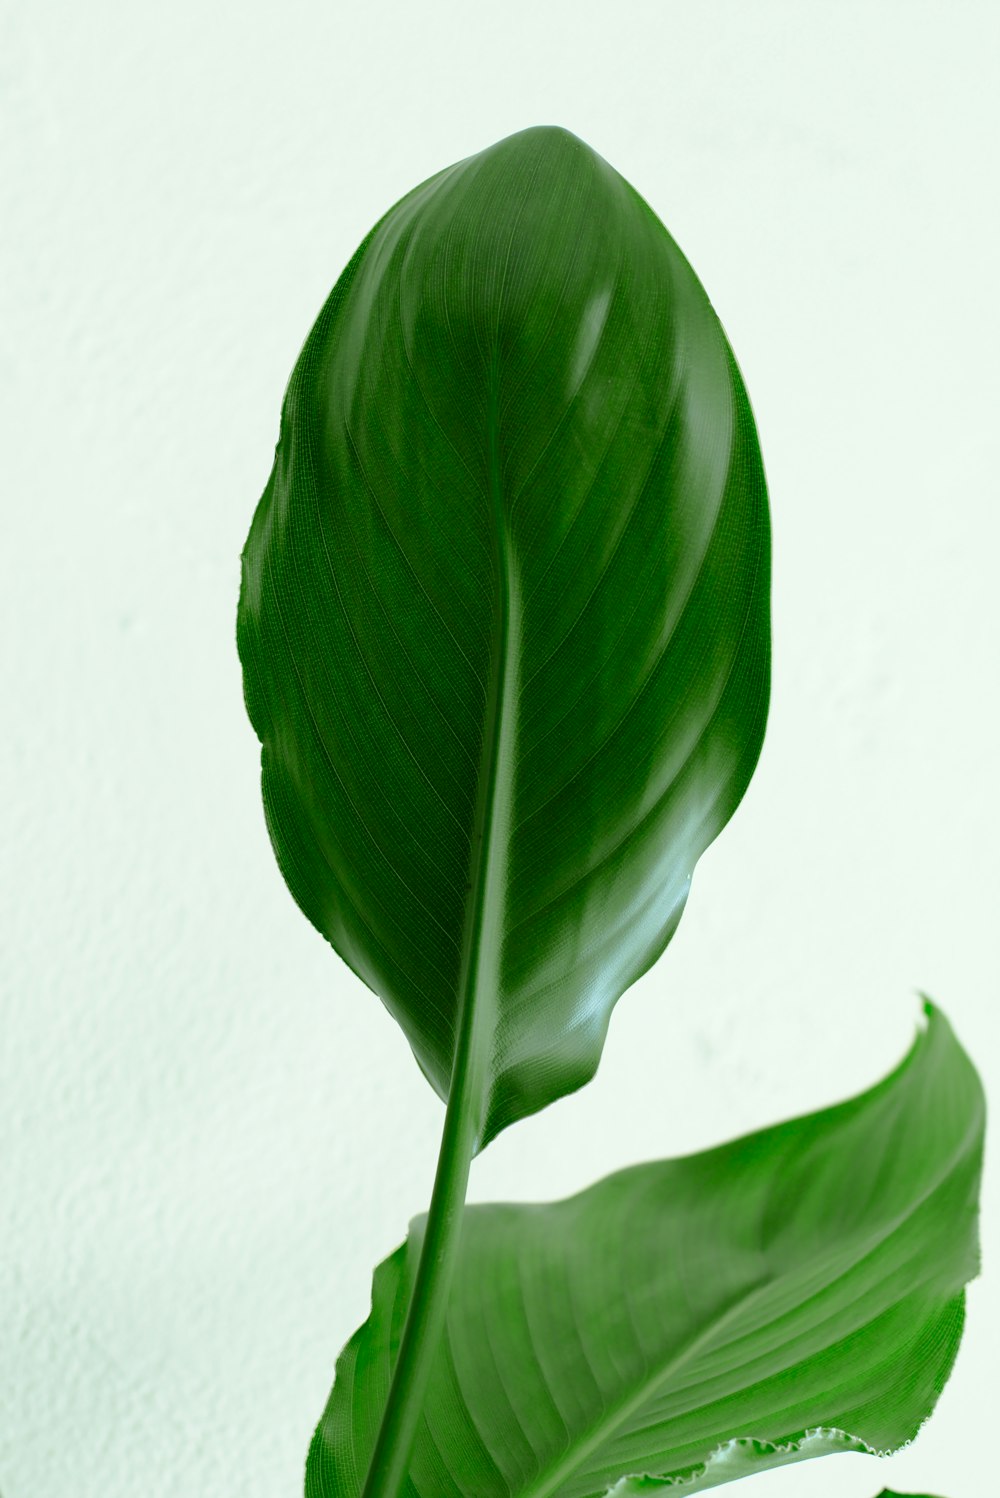 green leaf plant near white wall